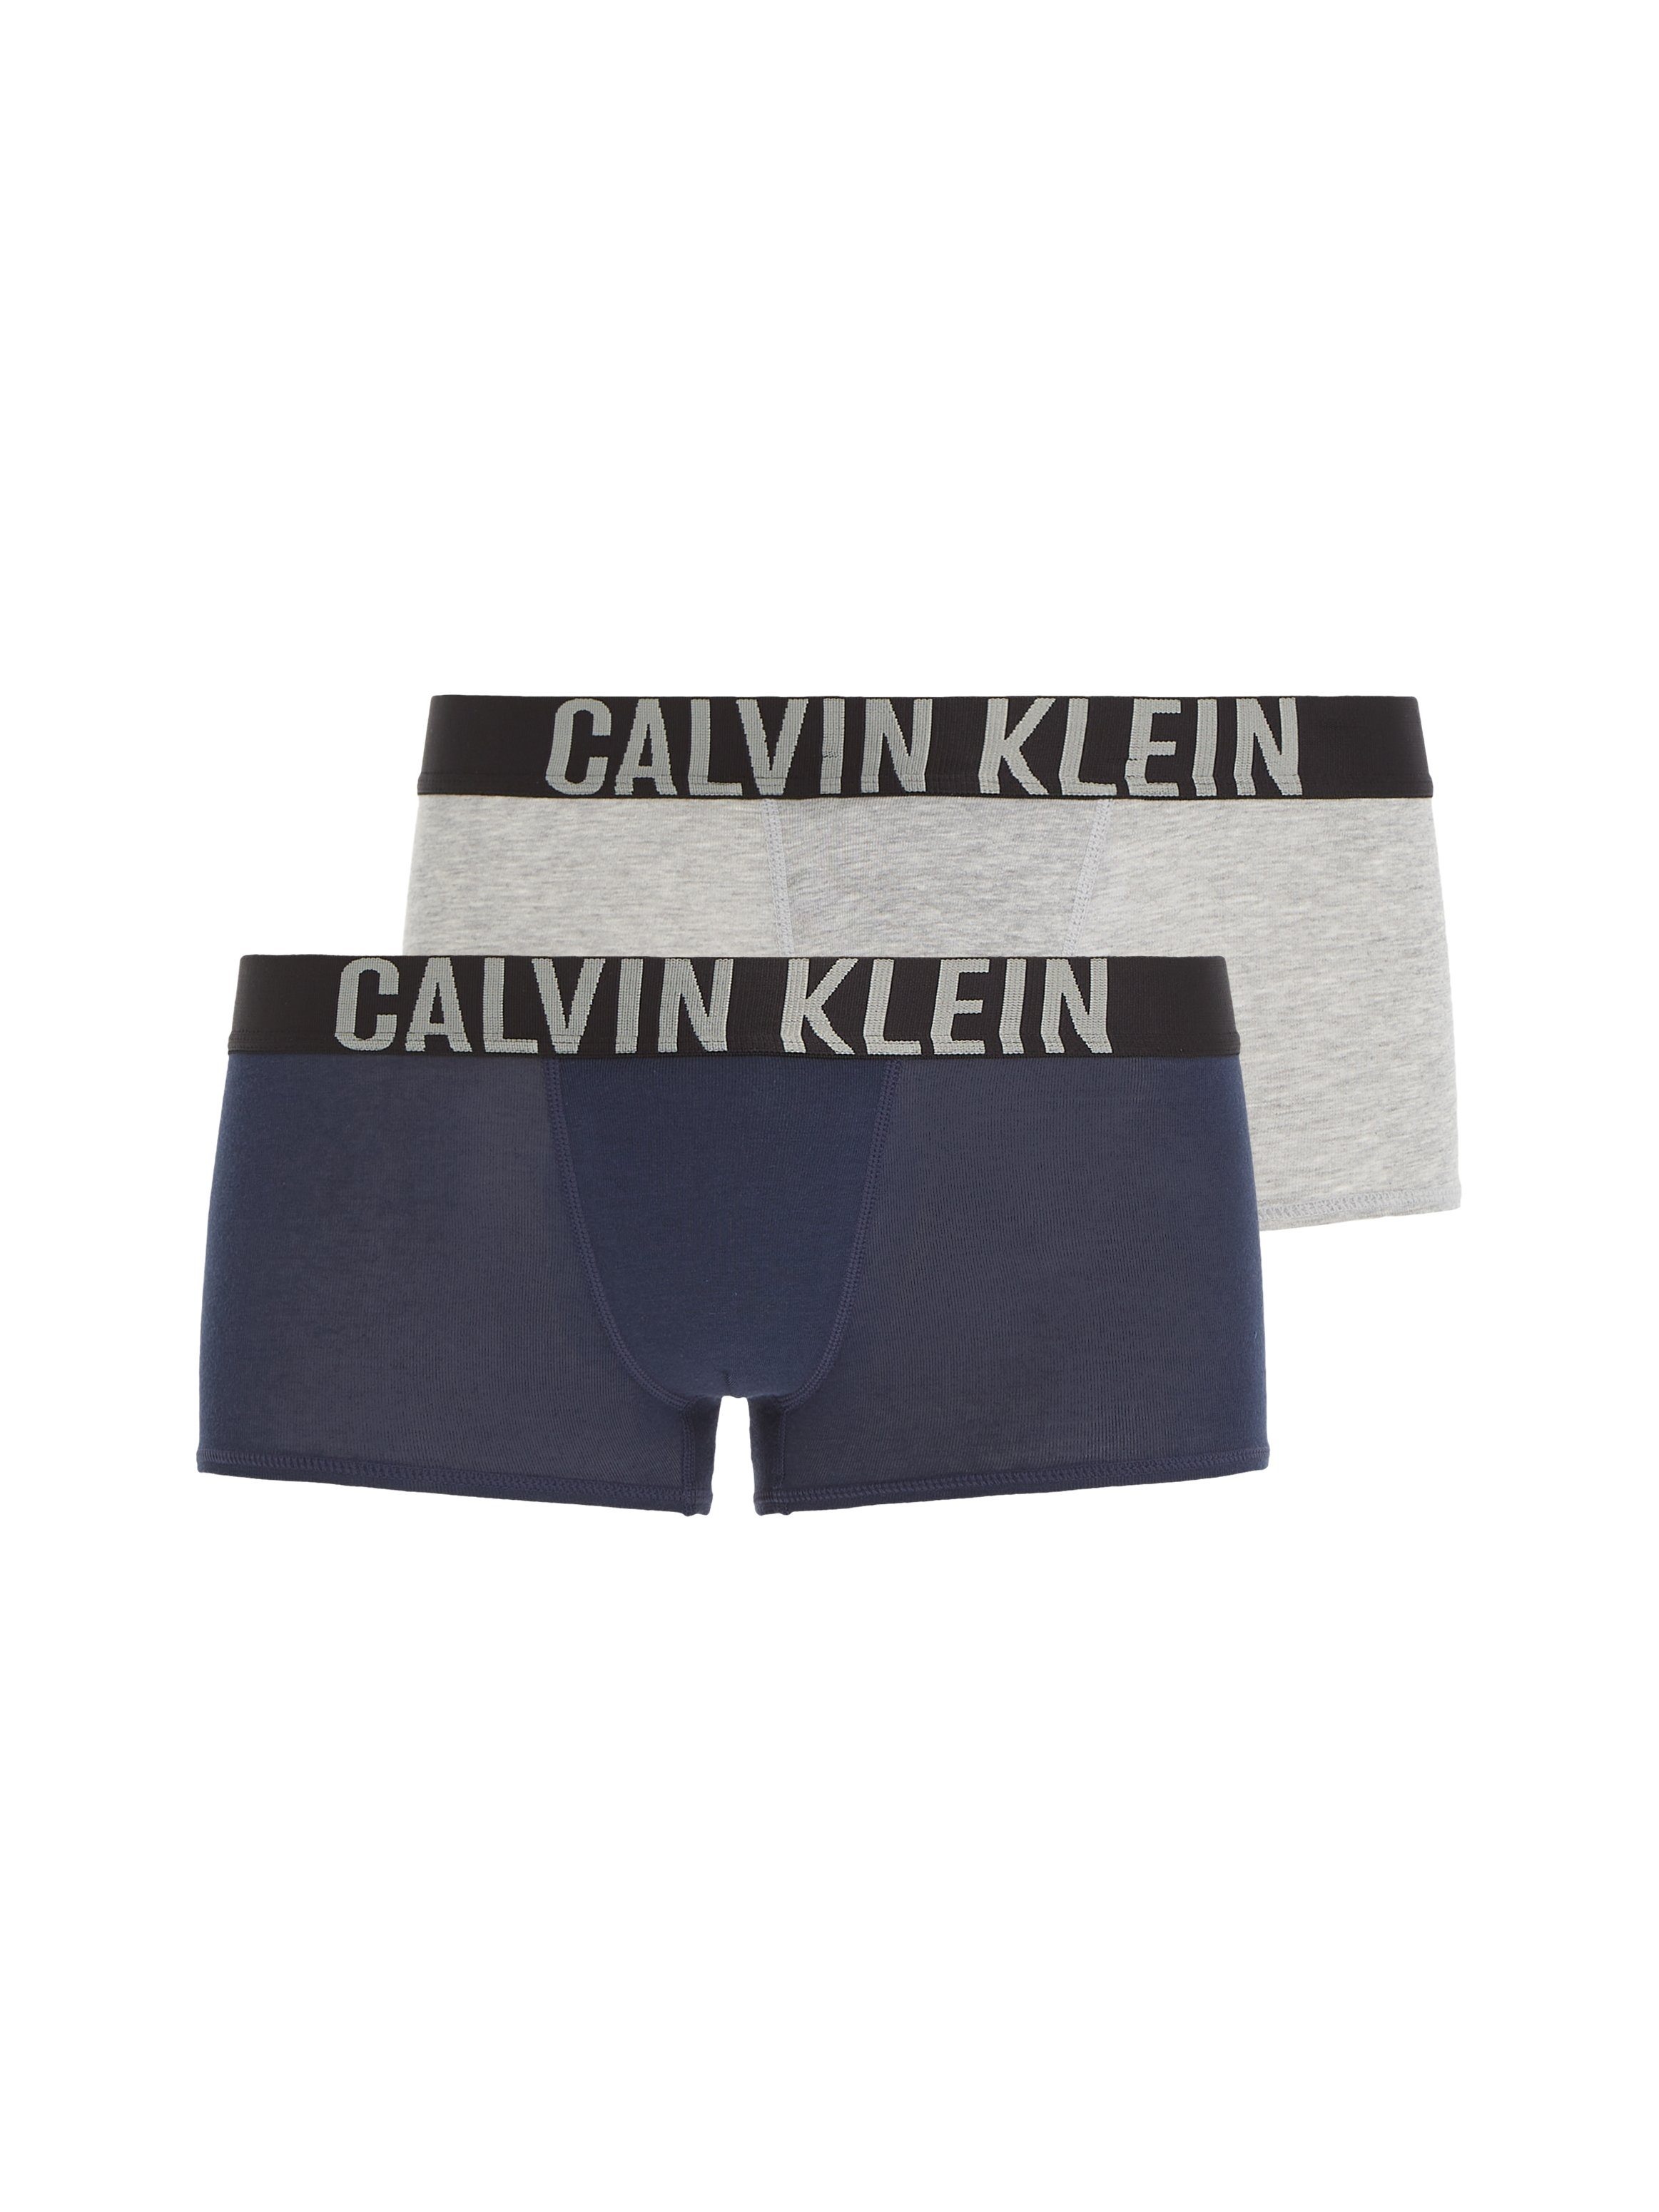 Calvin Klein Underwear Trunk grau-meliert, (2-St) navy Intenese Kinder Kids Junior Power MiniMe